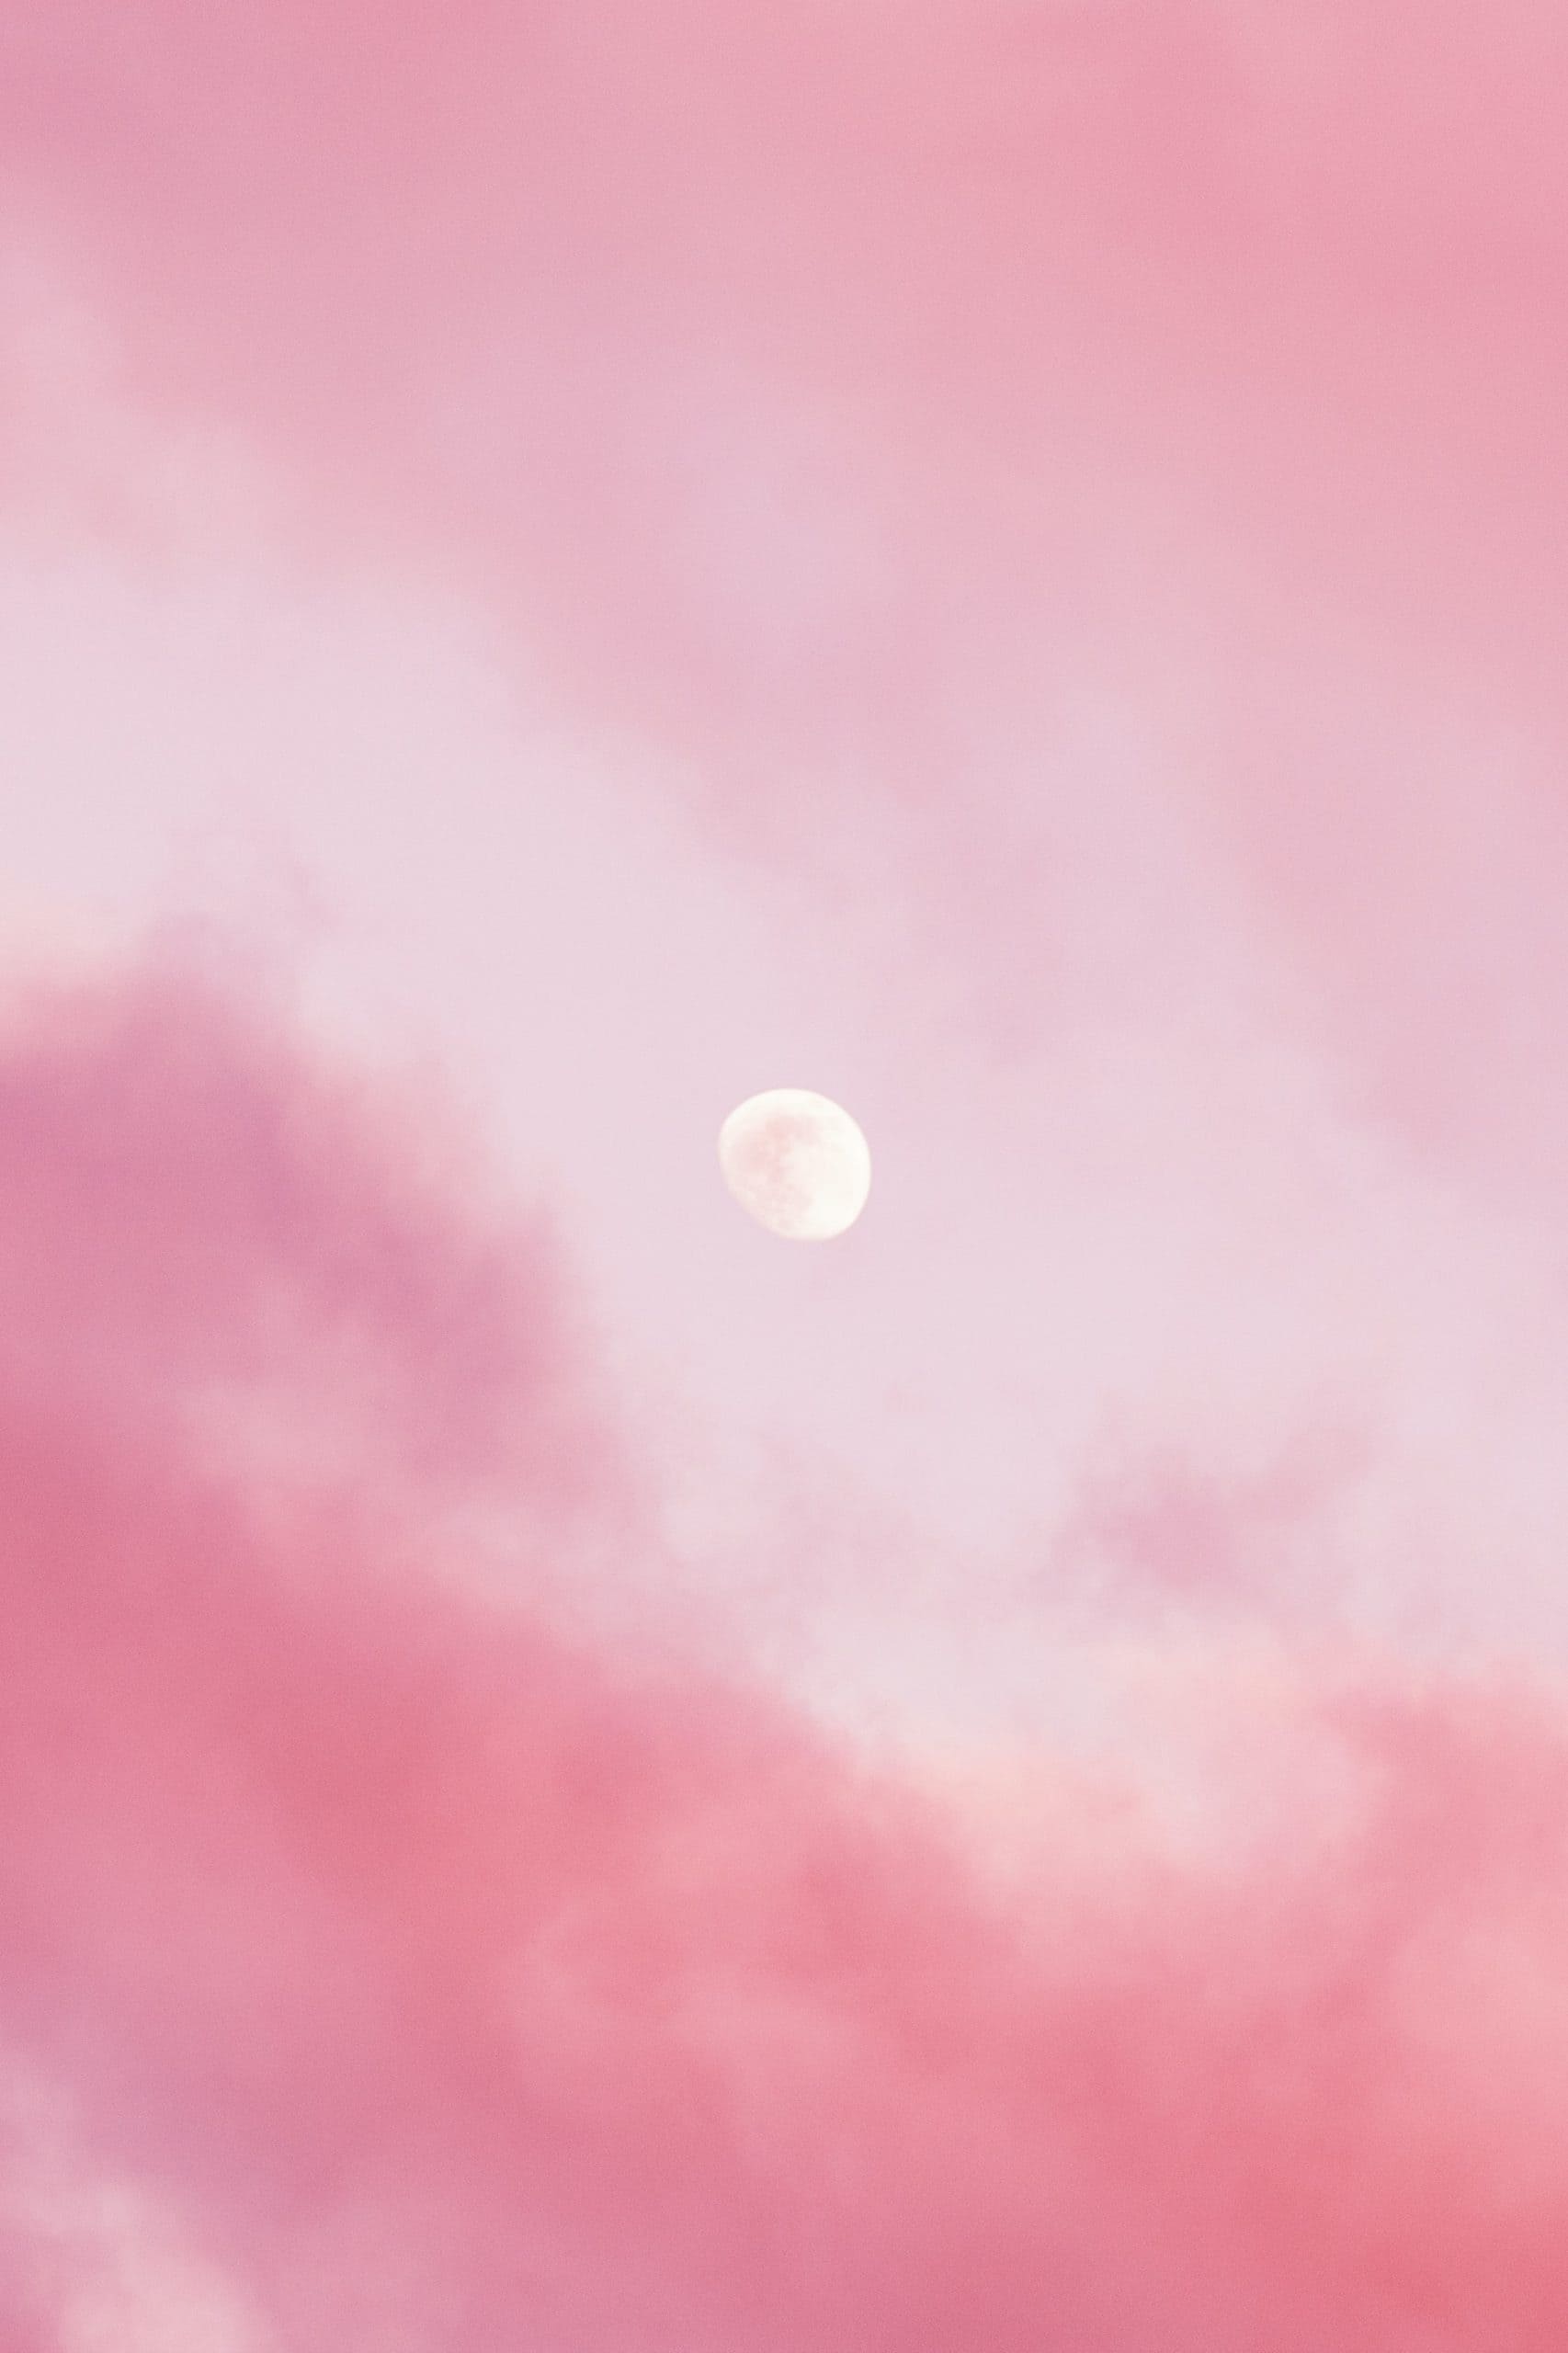 Hình nền điện thoại đẹp cho dế yêu của bạn.: Hình nền động bầu trời trăng  sao màu hồng đẹp tuyệ... | Hình nền, Bầu trời, Kỳ ảo